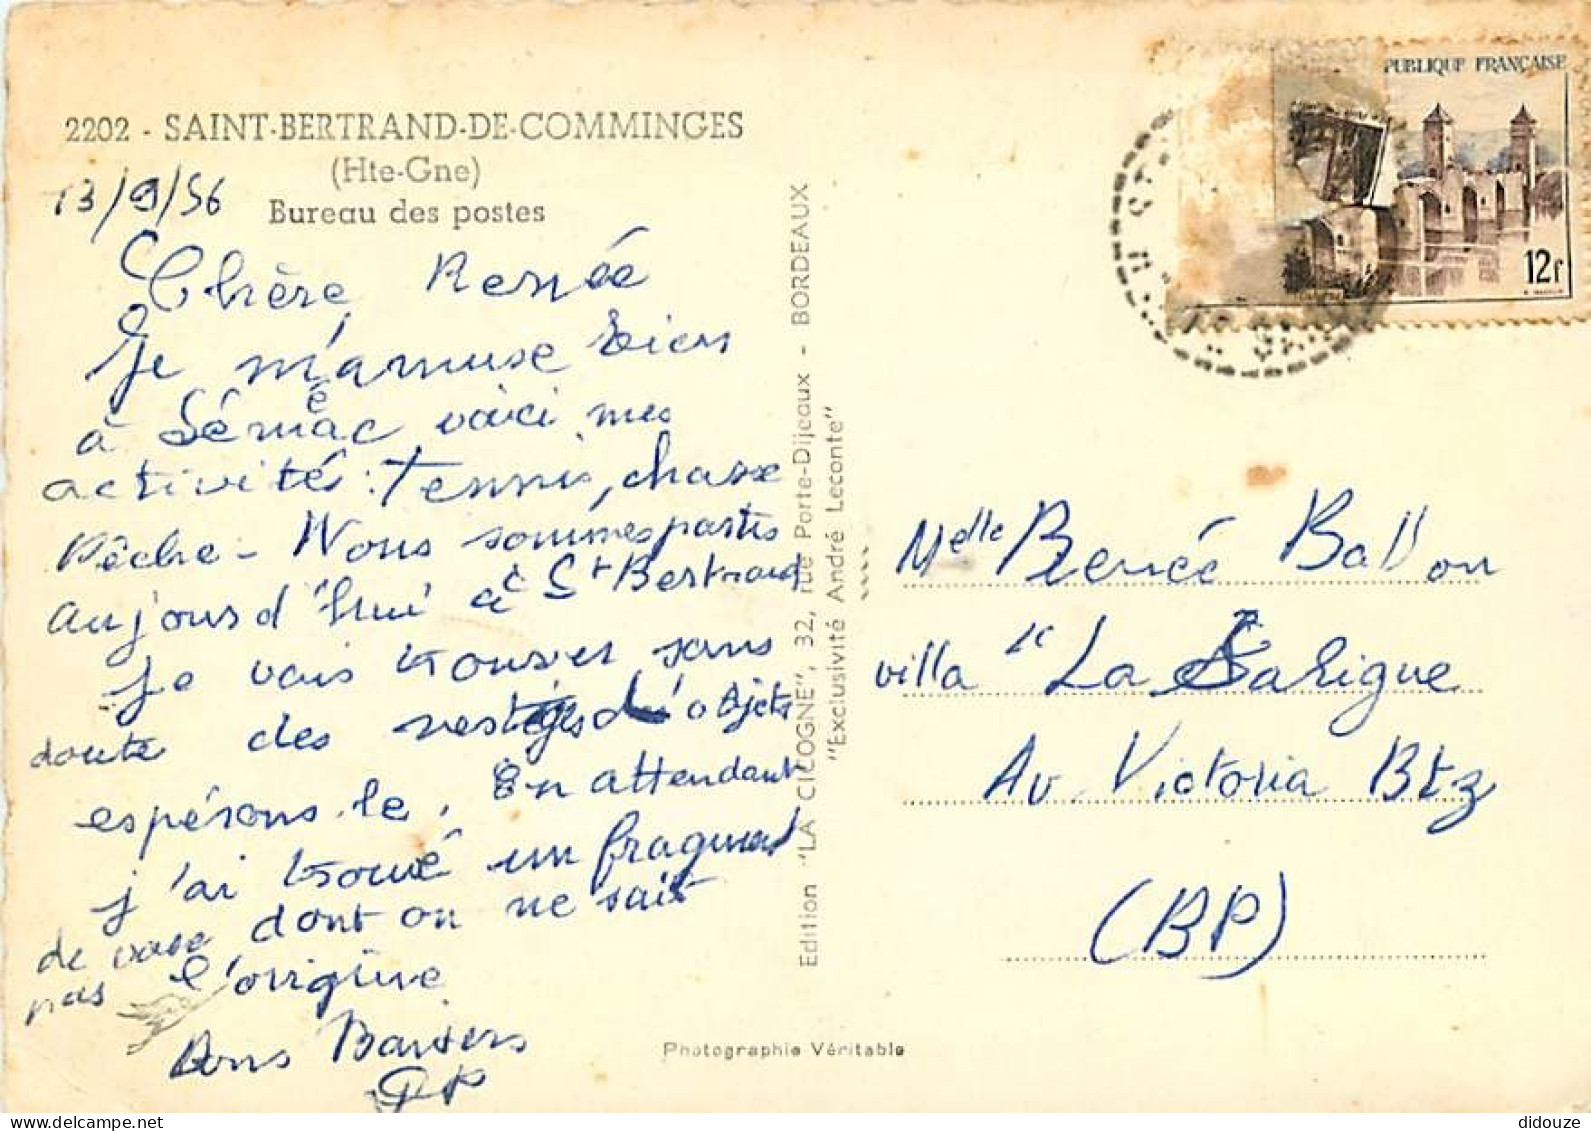 31 - Saint Bertrand De Comminges - Bureau Des Postes - Mention Photographie Véritable - Carte Dentelée - CPSM Grand Form - Saint Bertrand De Comminges